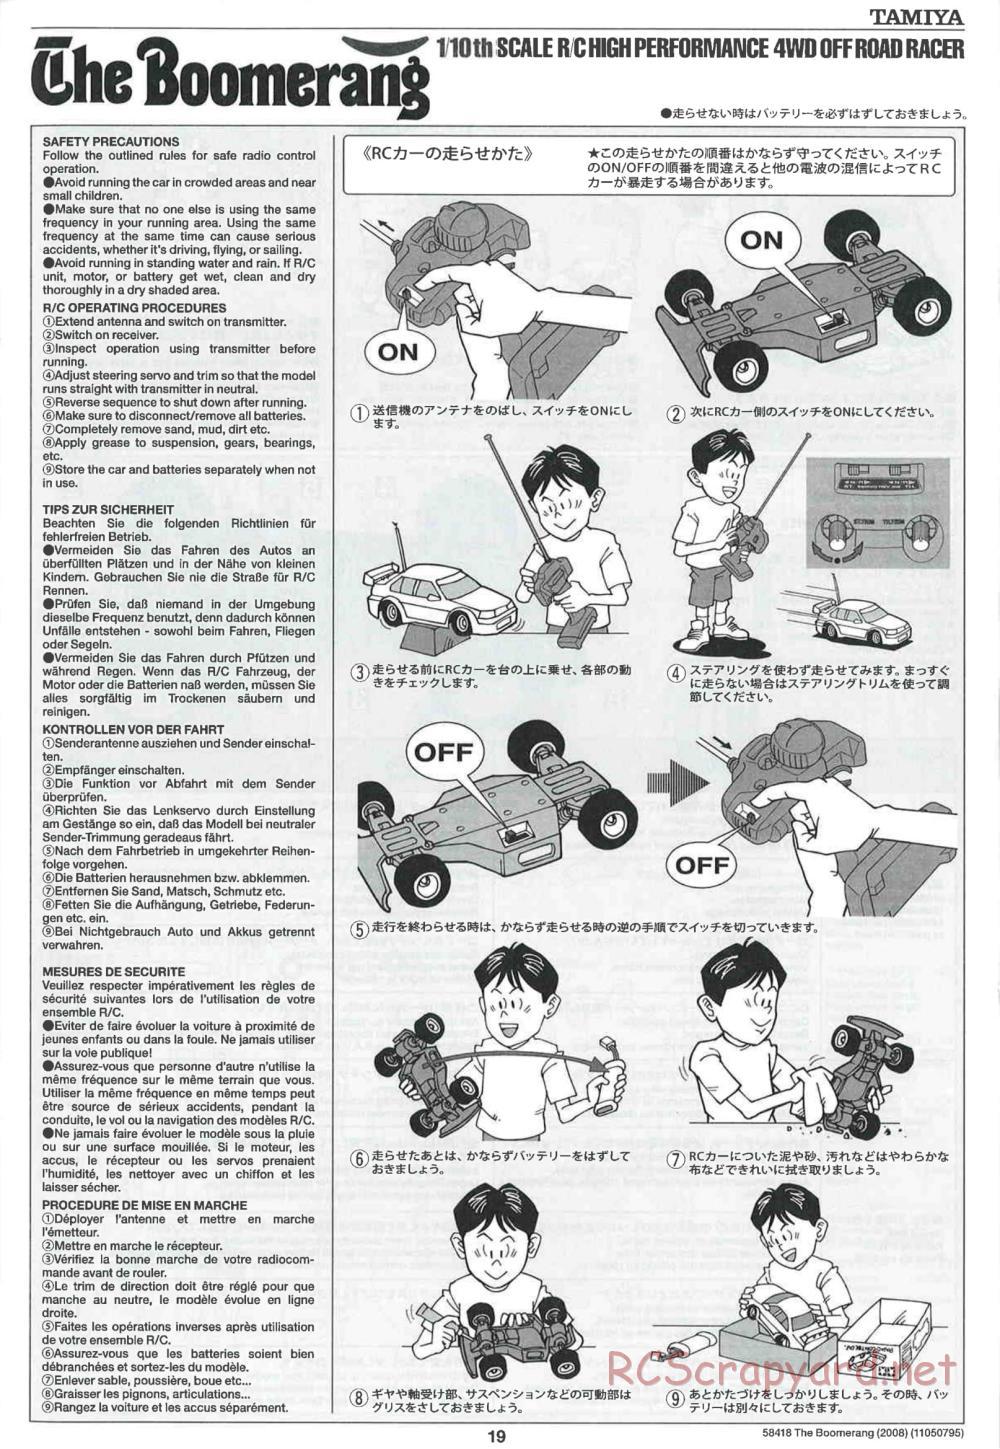 Tamiya - The Boomerang 2008 Chassis - Manual - Page 19